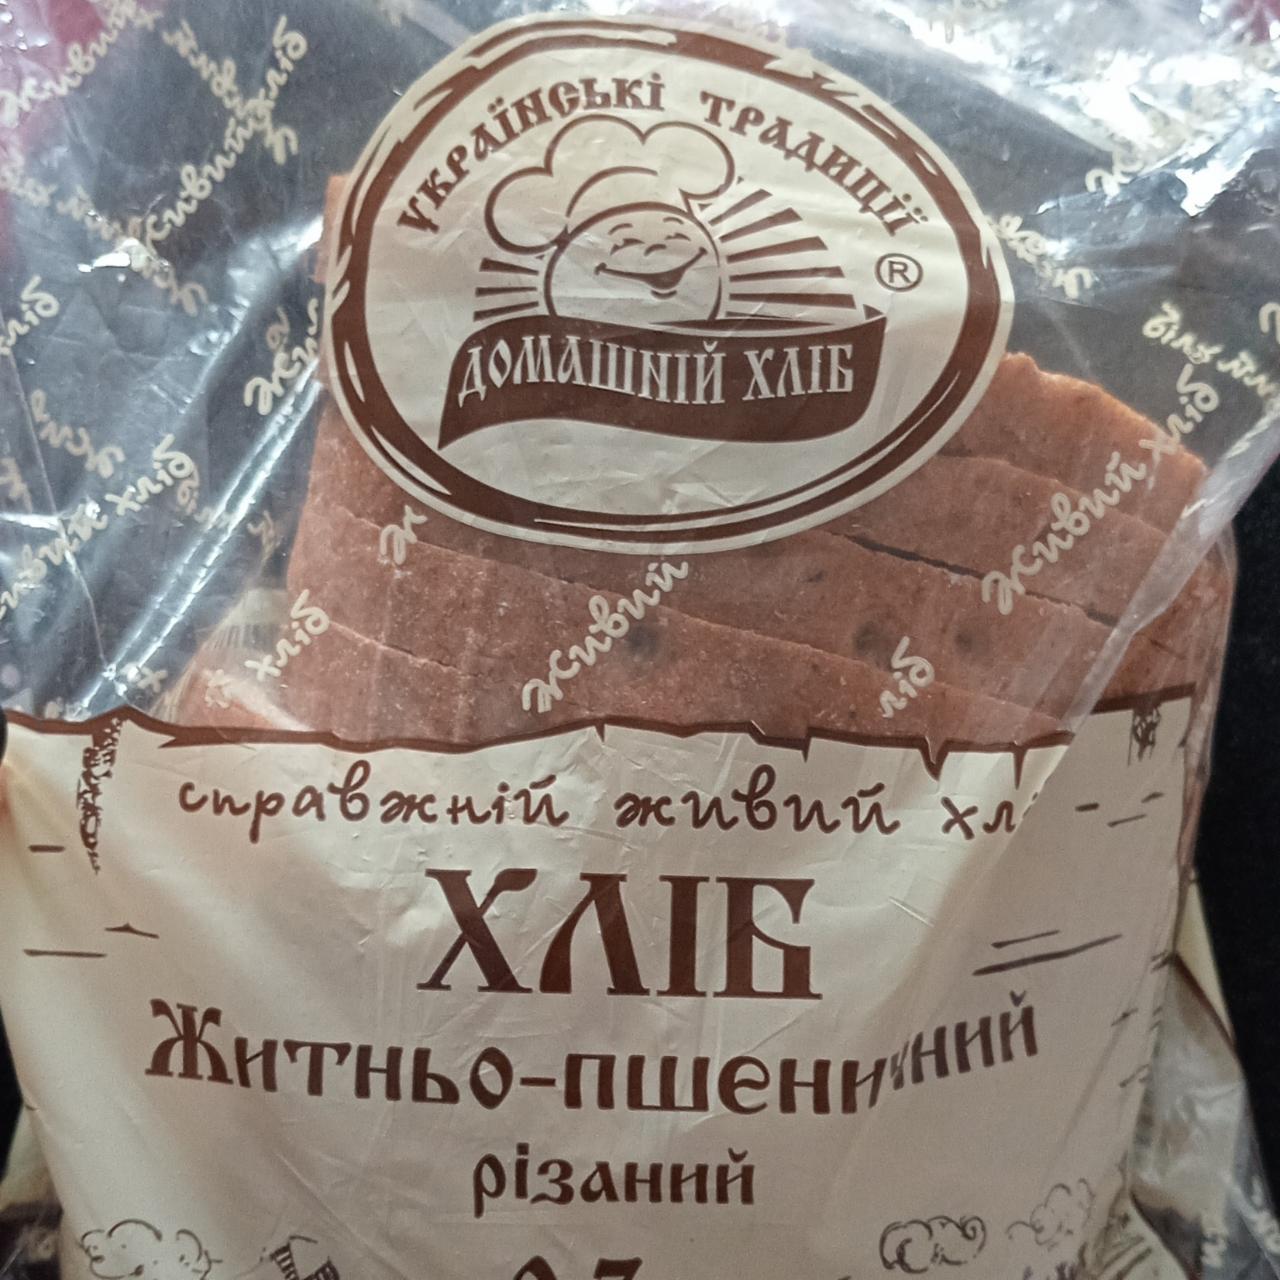 Фото - Хлеб ржано-пшеничный резаный Украинские Традиции